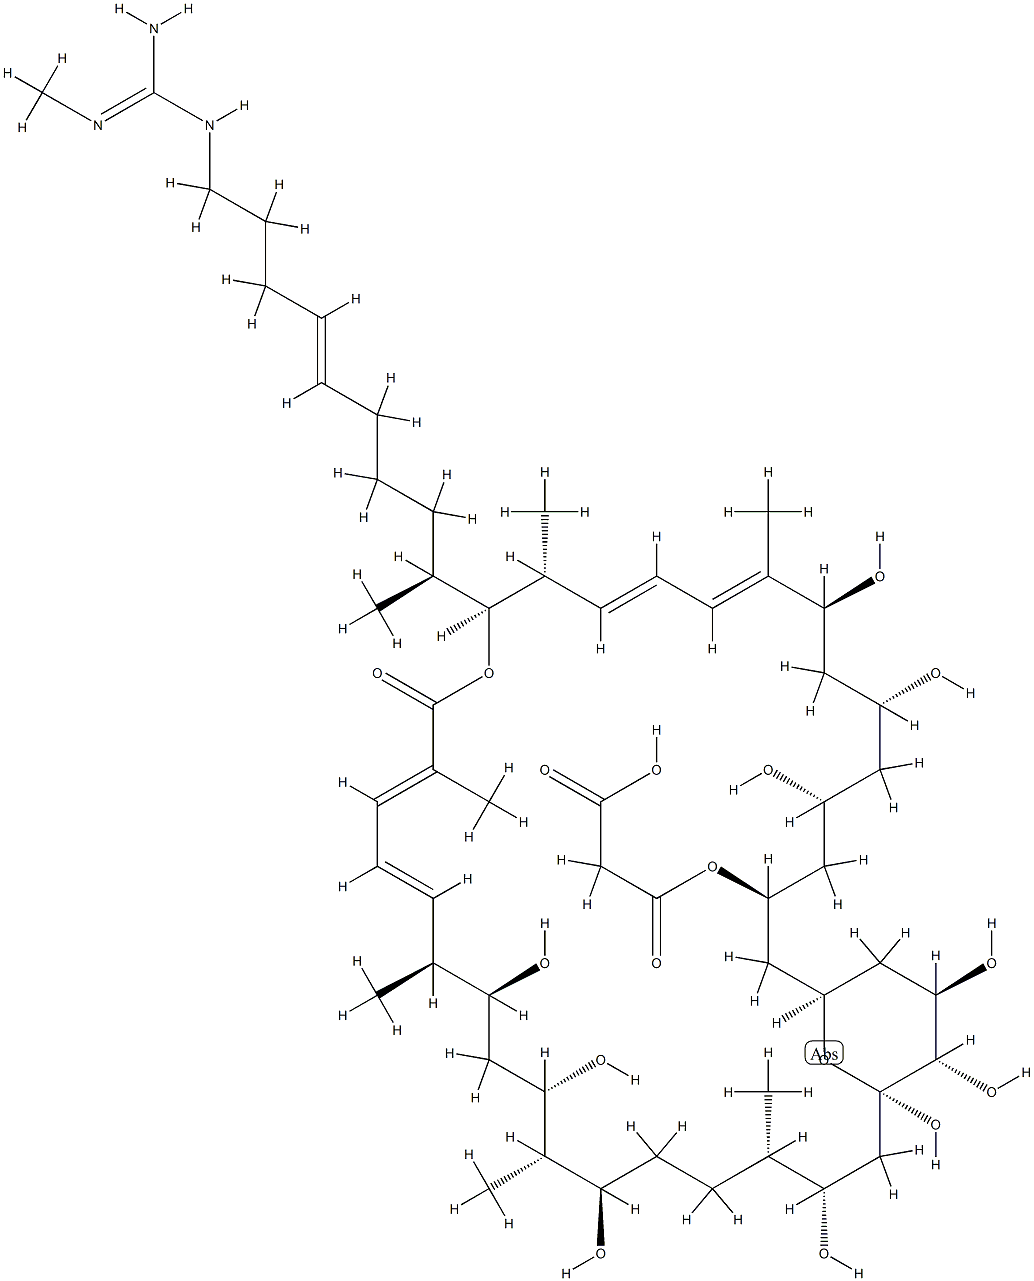 azalomycin F4 Struktur